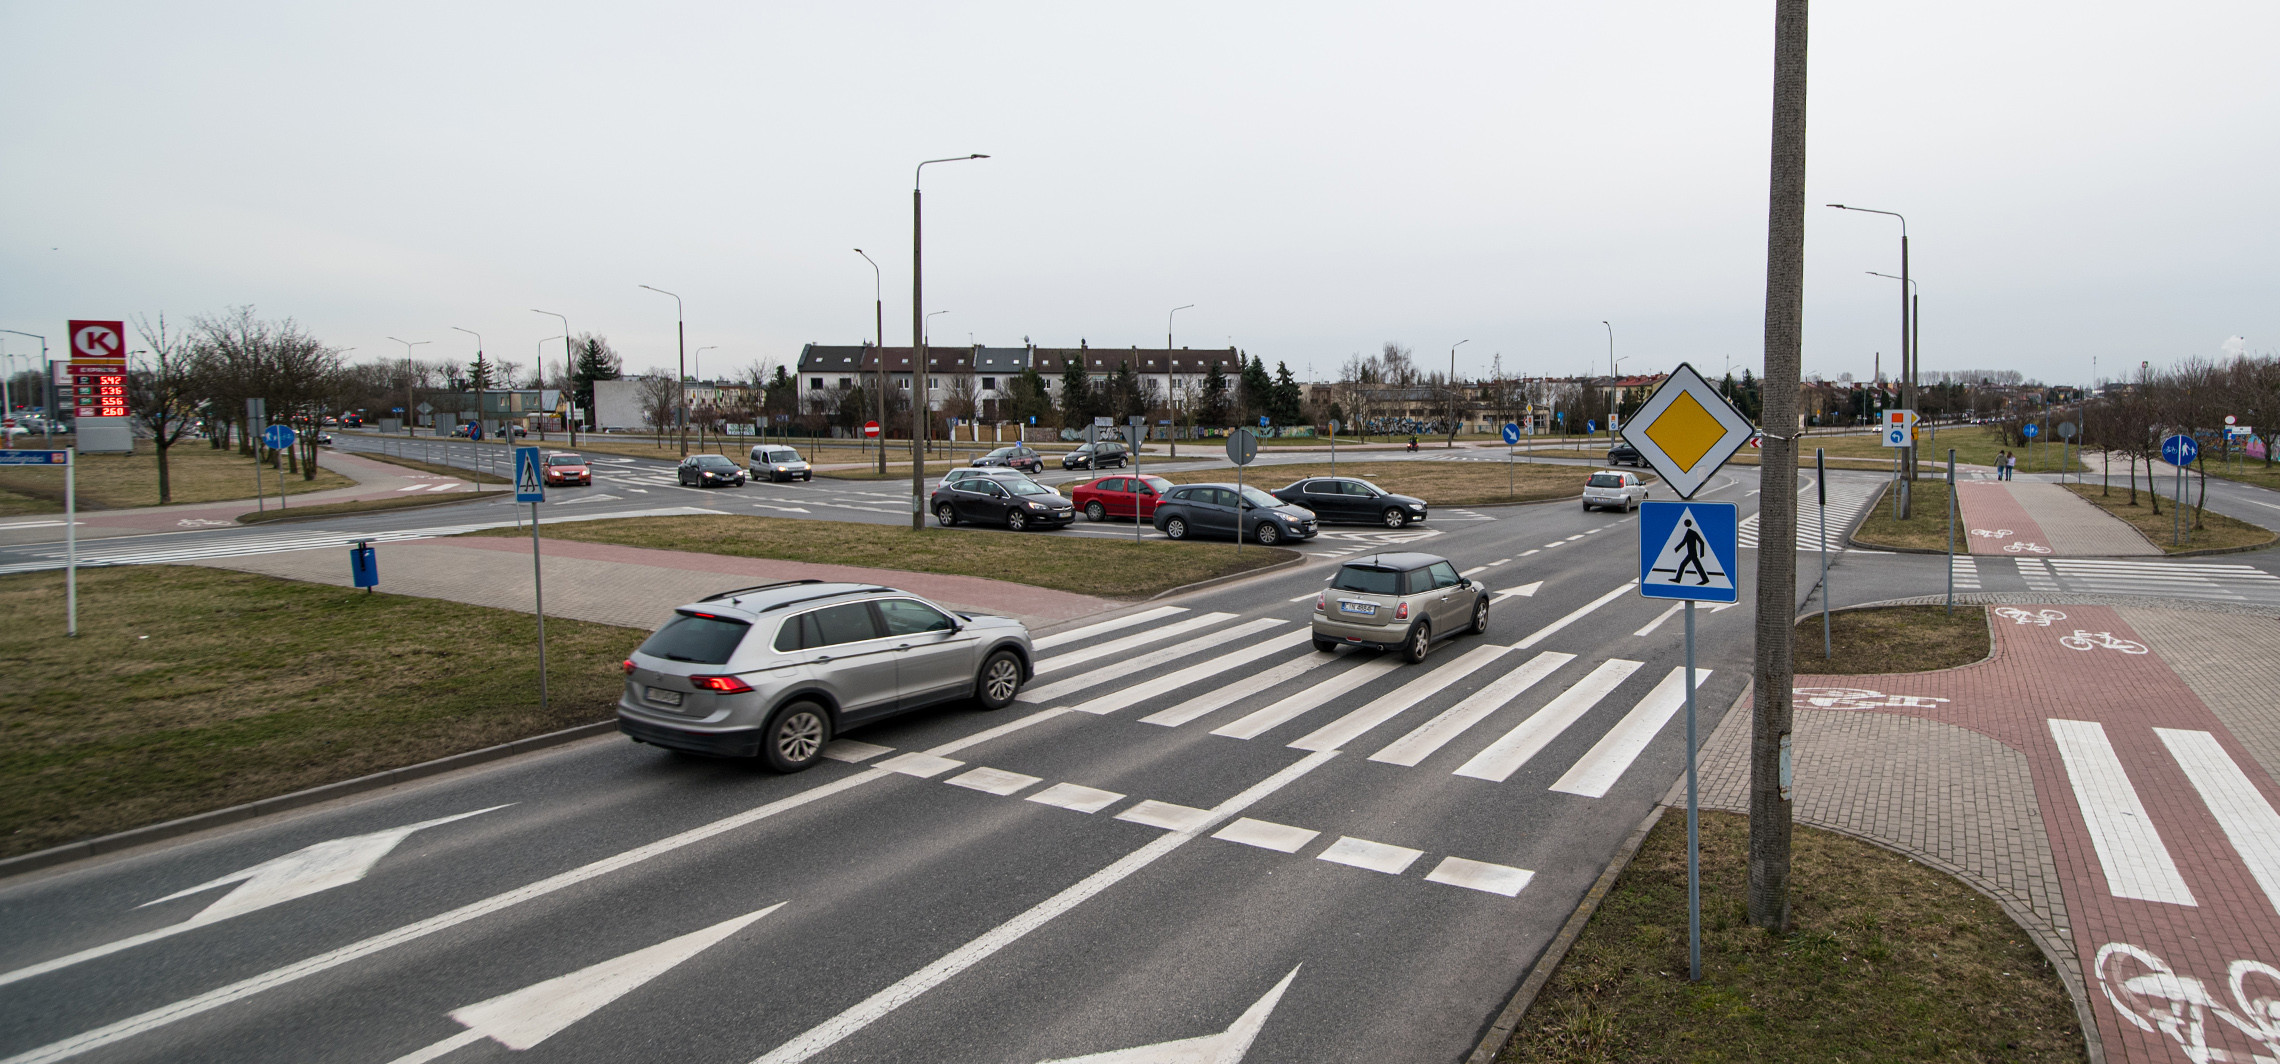 Inowrocław - Komisja zaproponowała zmiany na skrzyżowaniu